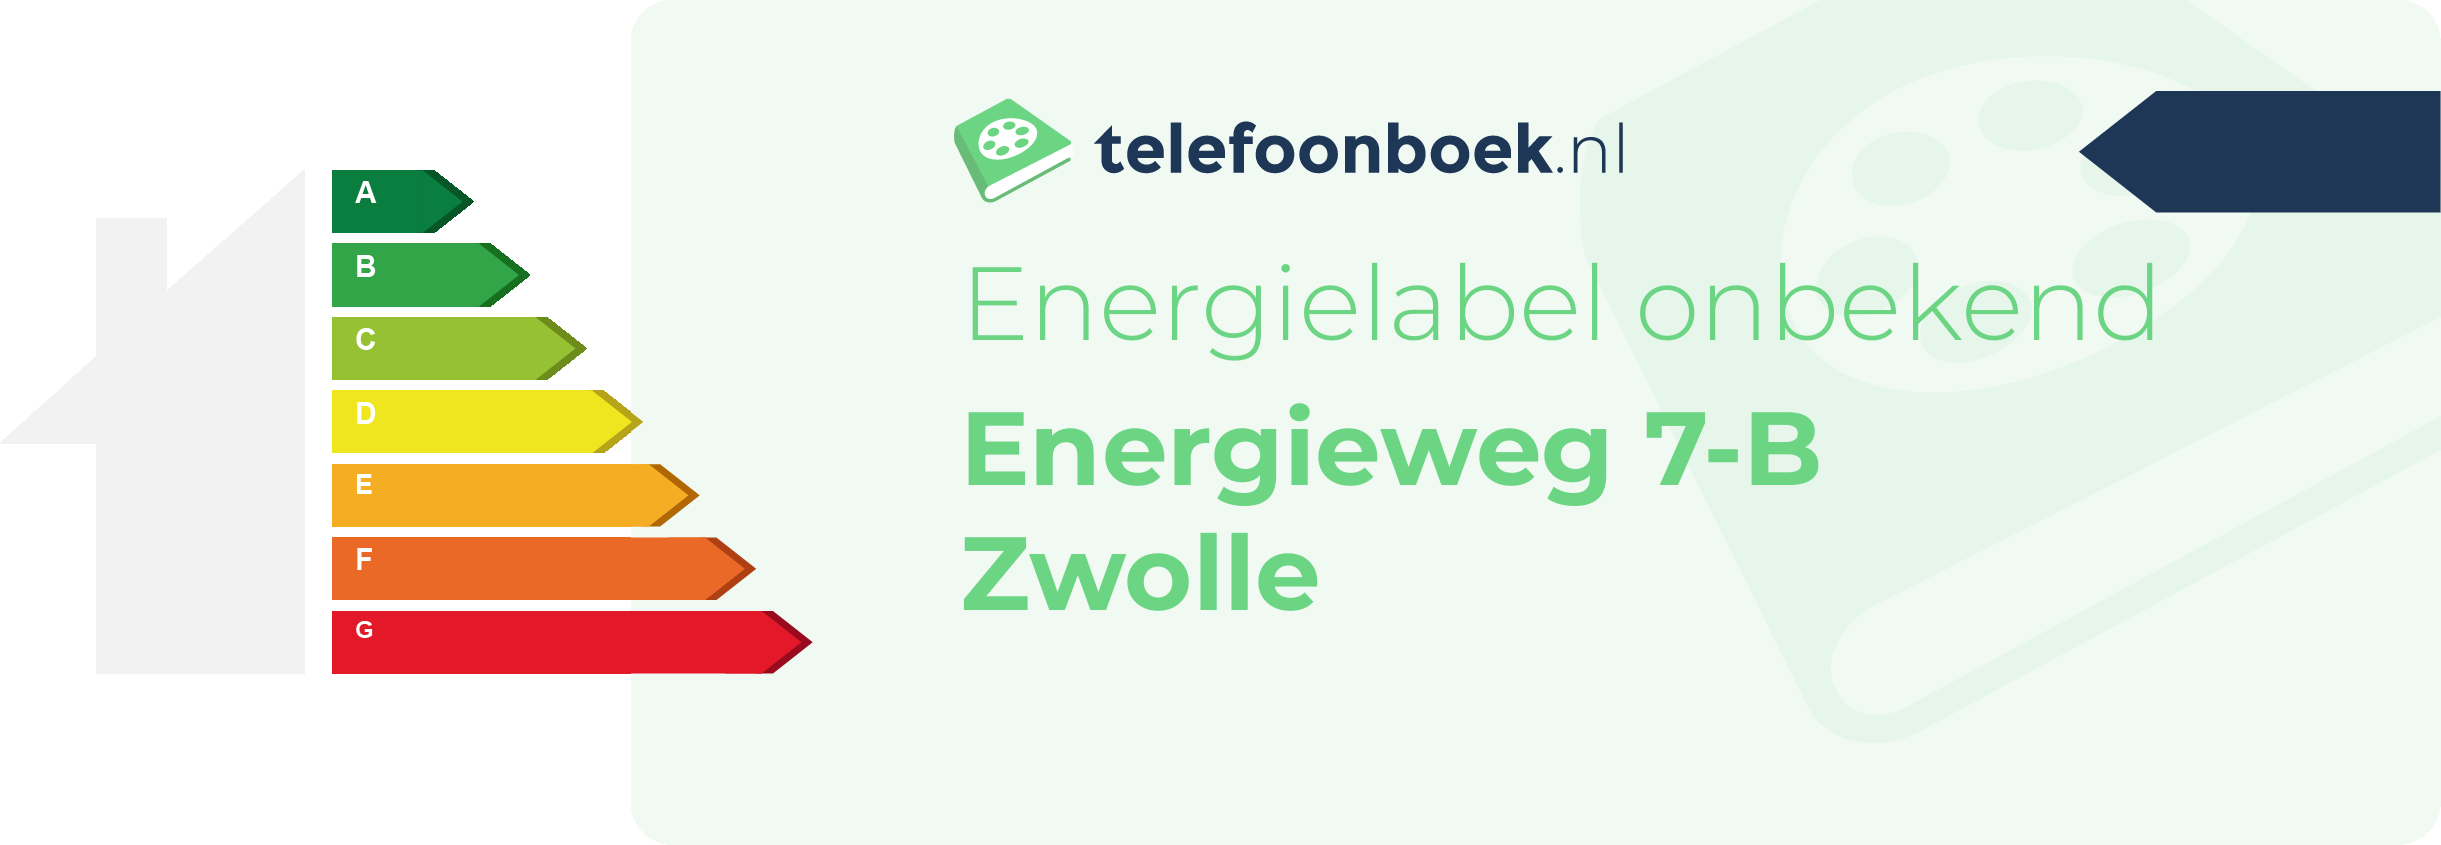 Energielabel Energieweg 7-B Zwolle